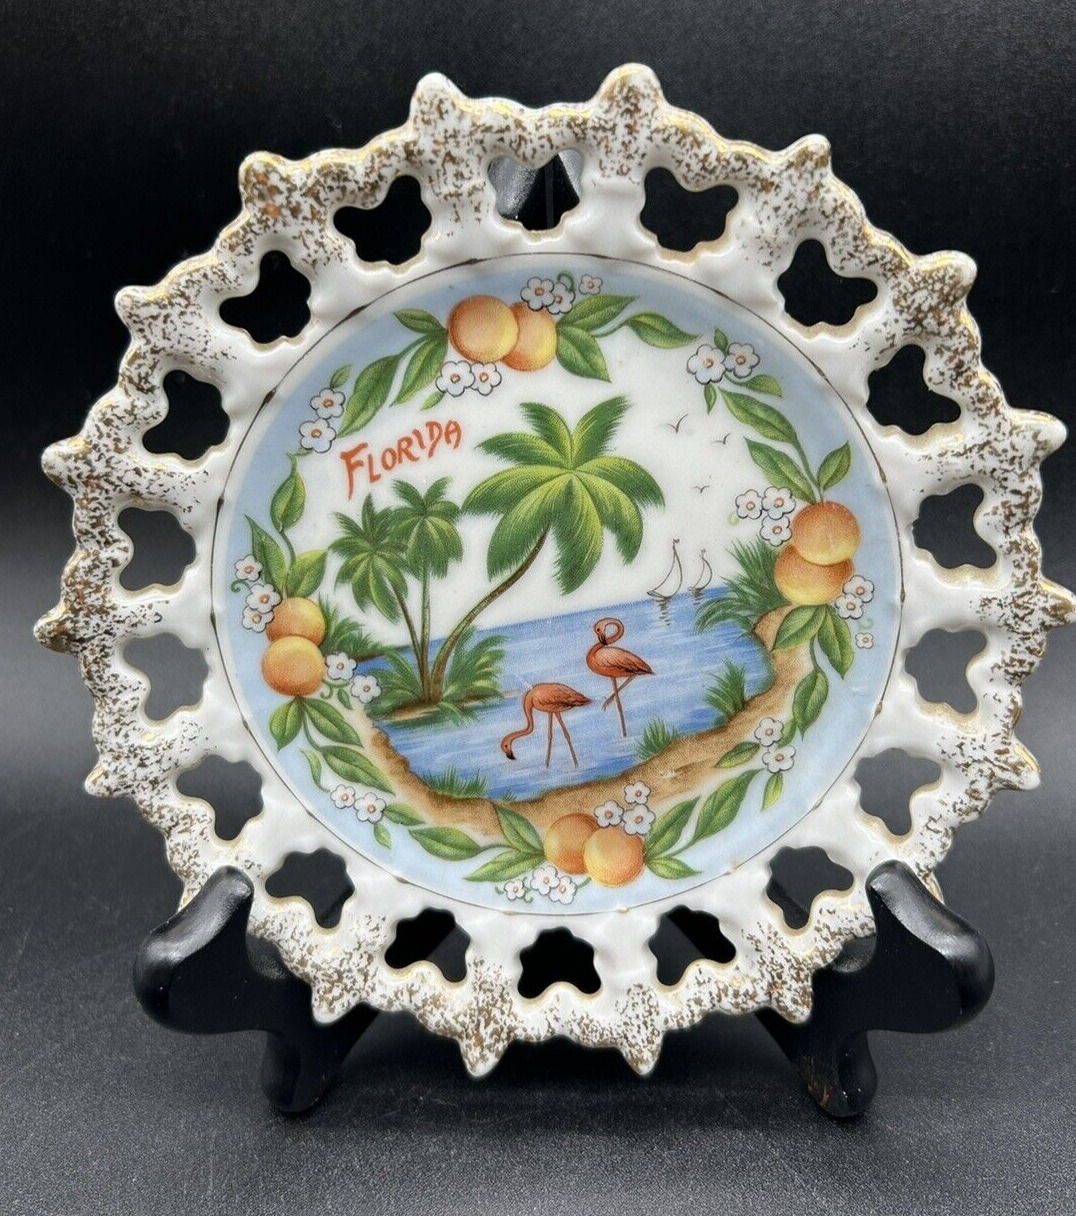 Vtg. 6-Inch Florida Souvenir Plate w/ Gold Trim, Flamingoes, Palms, Citrus